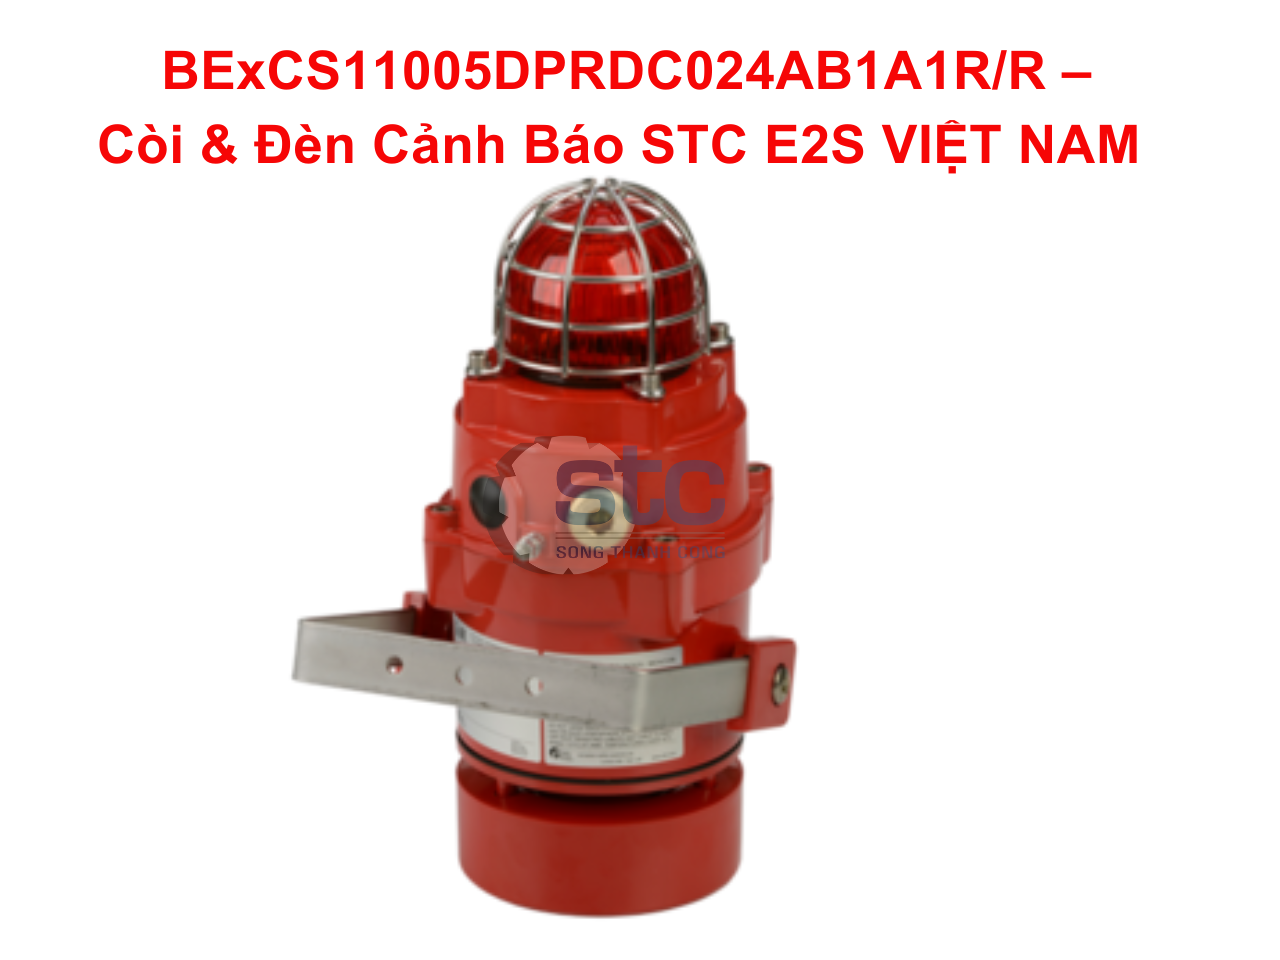 bexcs11005-dprdc024ab1a1r-r-–-coi-den-canh-bao-stc-e2s-viet-nam-1.png